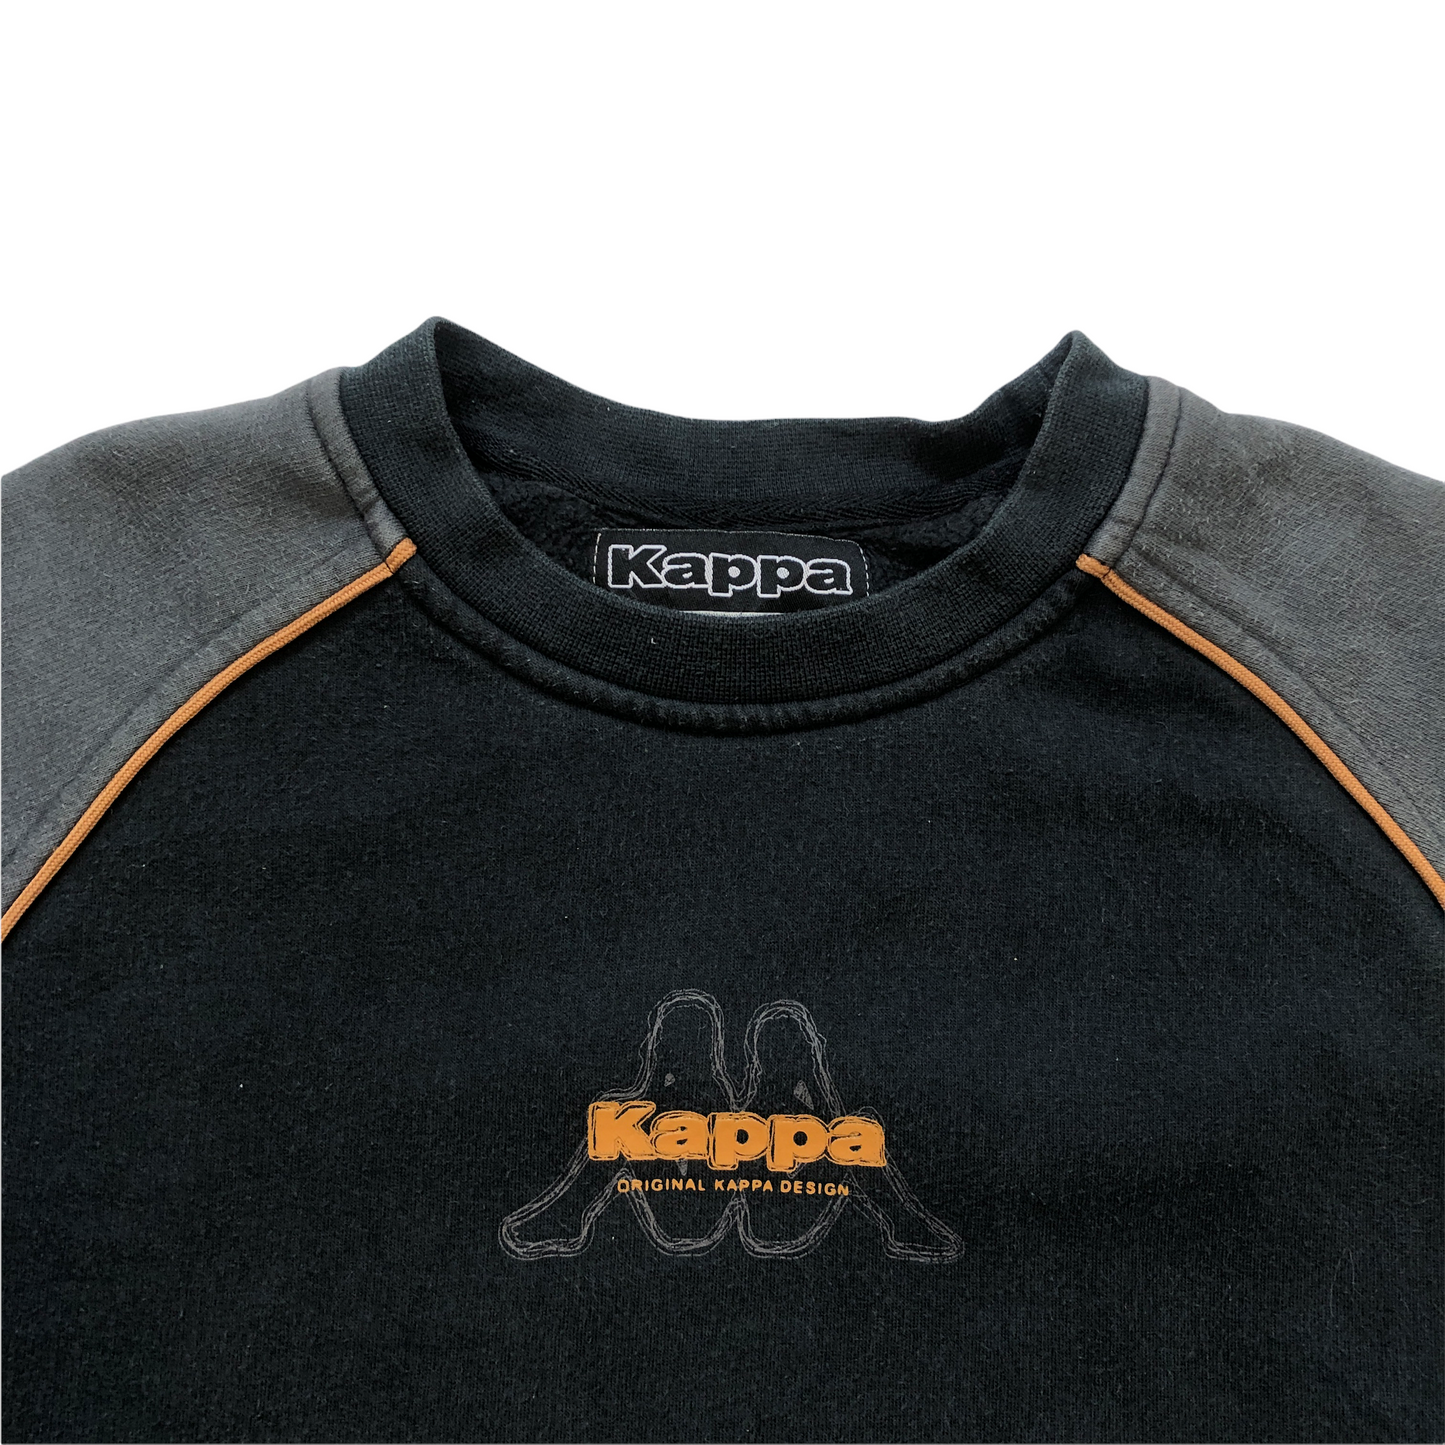 Vintage Kappa Sweatshirt (Age 12-13)